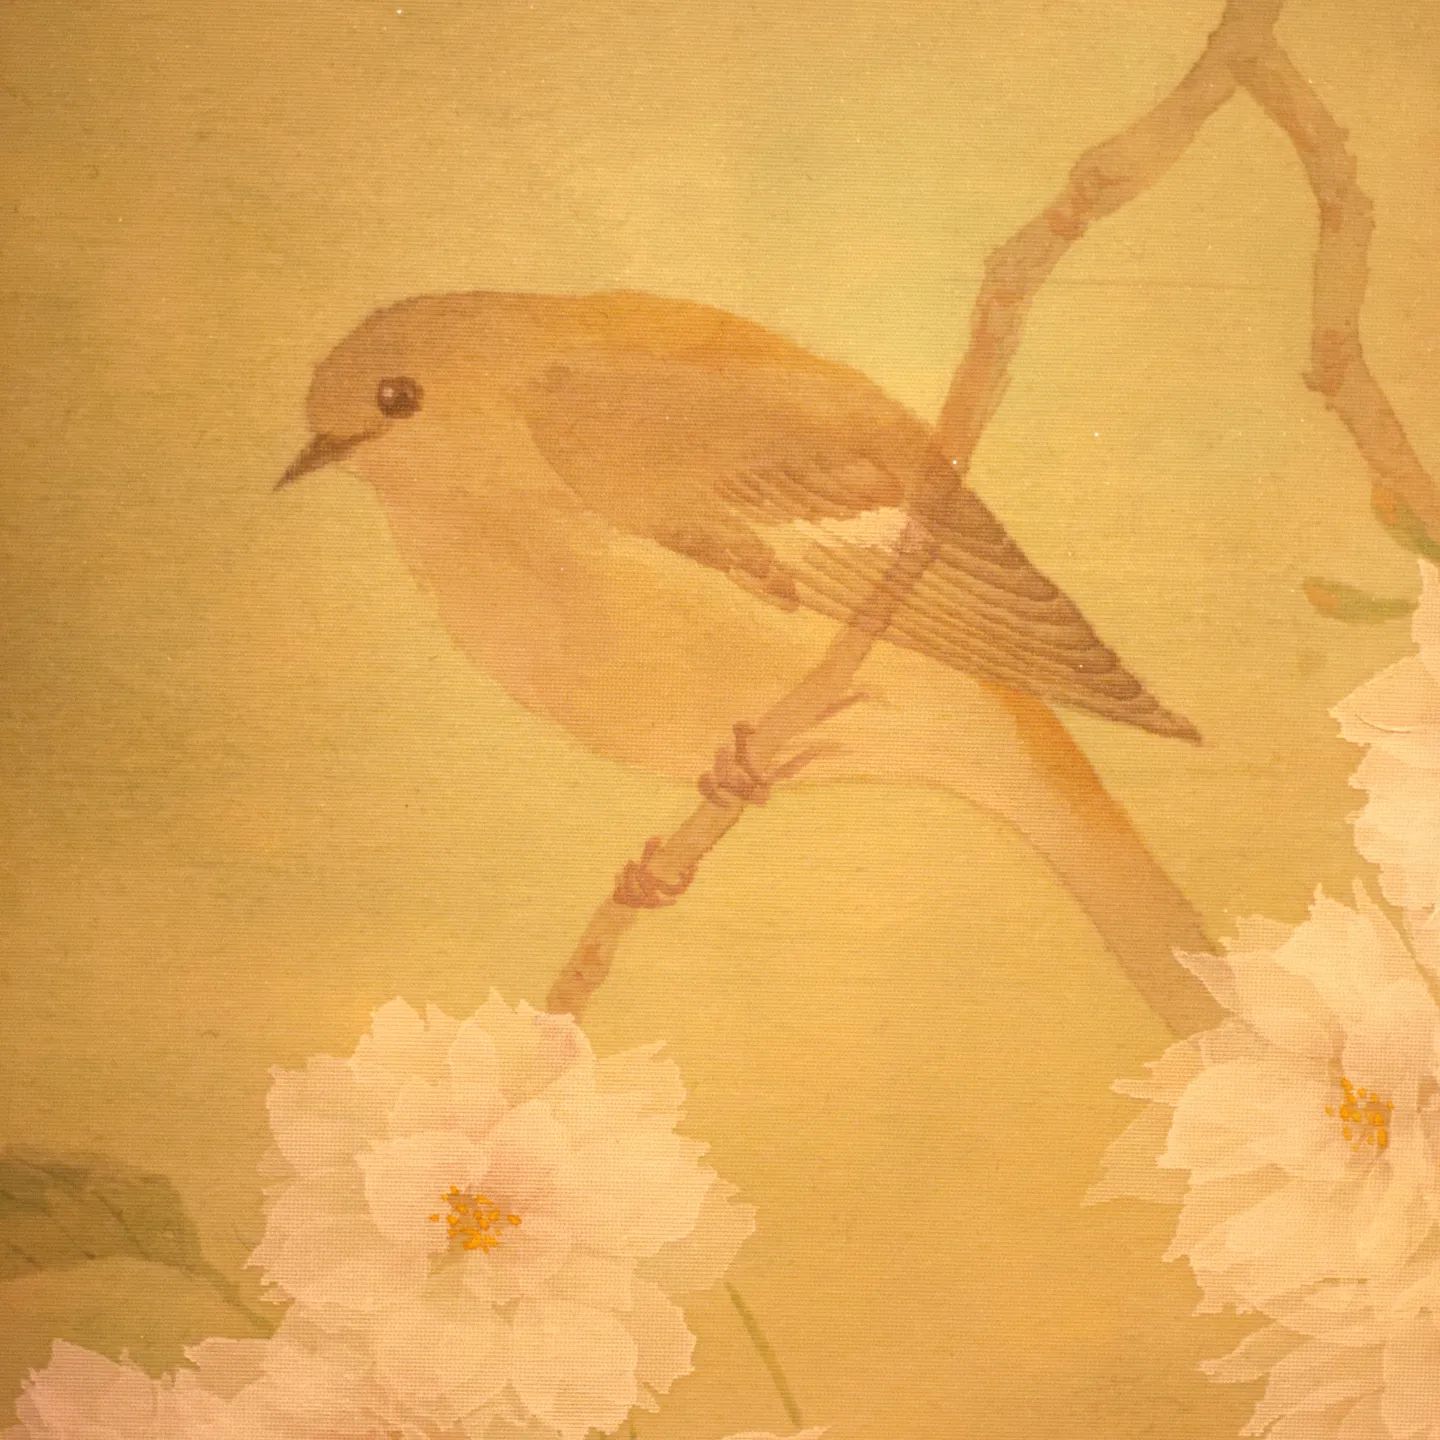 『４月になれば』
秋頃日本に渡ってきて、4月の桜が咲く頃に日本を離れていくジョウビタキのメスを描きました。

中内共路個展『風の言の葉』
場所　広島福屋八丁堀本店7階美術画廊
会期　12月8日（木）～14日（水）
時間　10:30～19:30　（最終日は16:00まで）